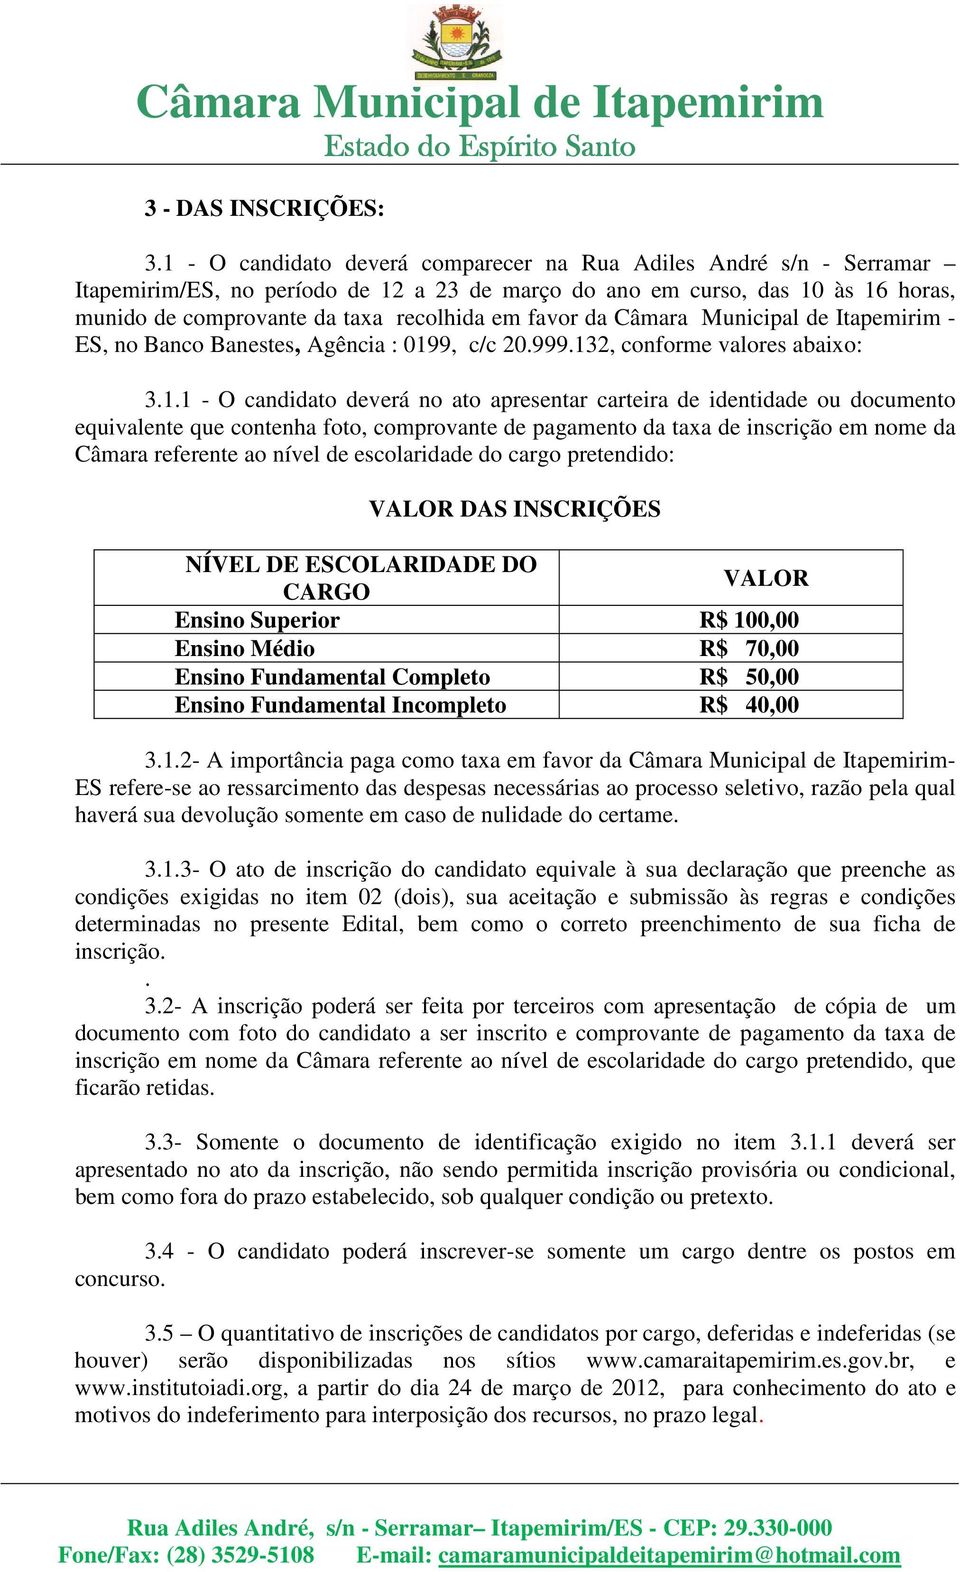 favor da Câmara Municipal de Itapemirim - ES, no Banco Banestes, Agência : 019